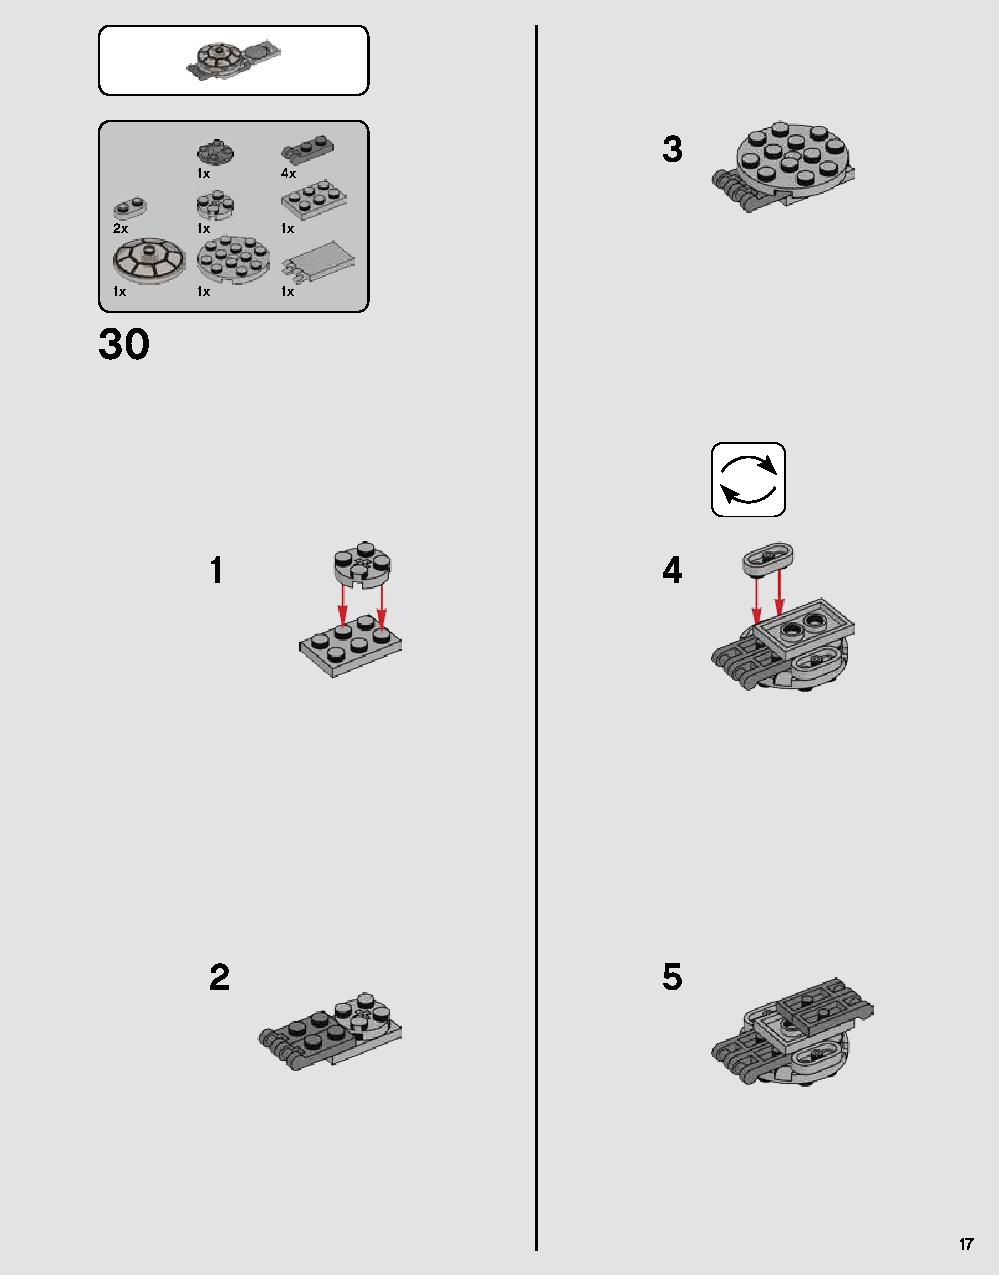 ダース・ベイダーの城 75251 レゴの商品情報 レゴの説明書・組立方法 17 page